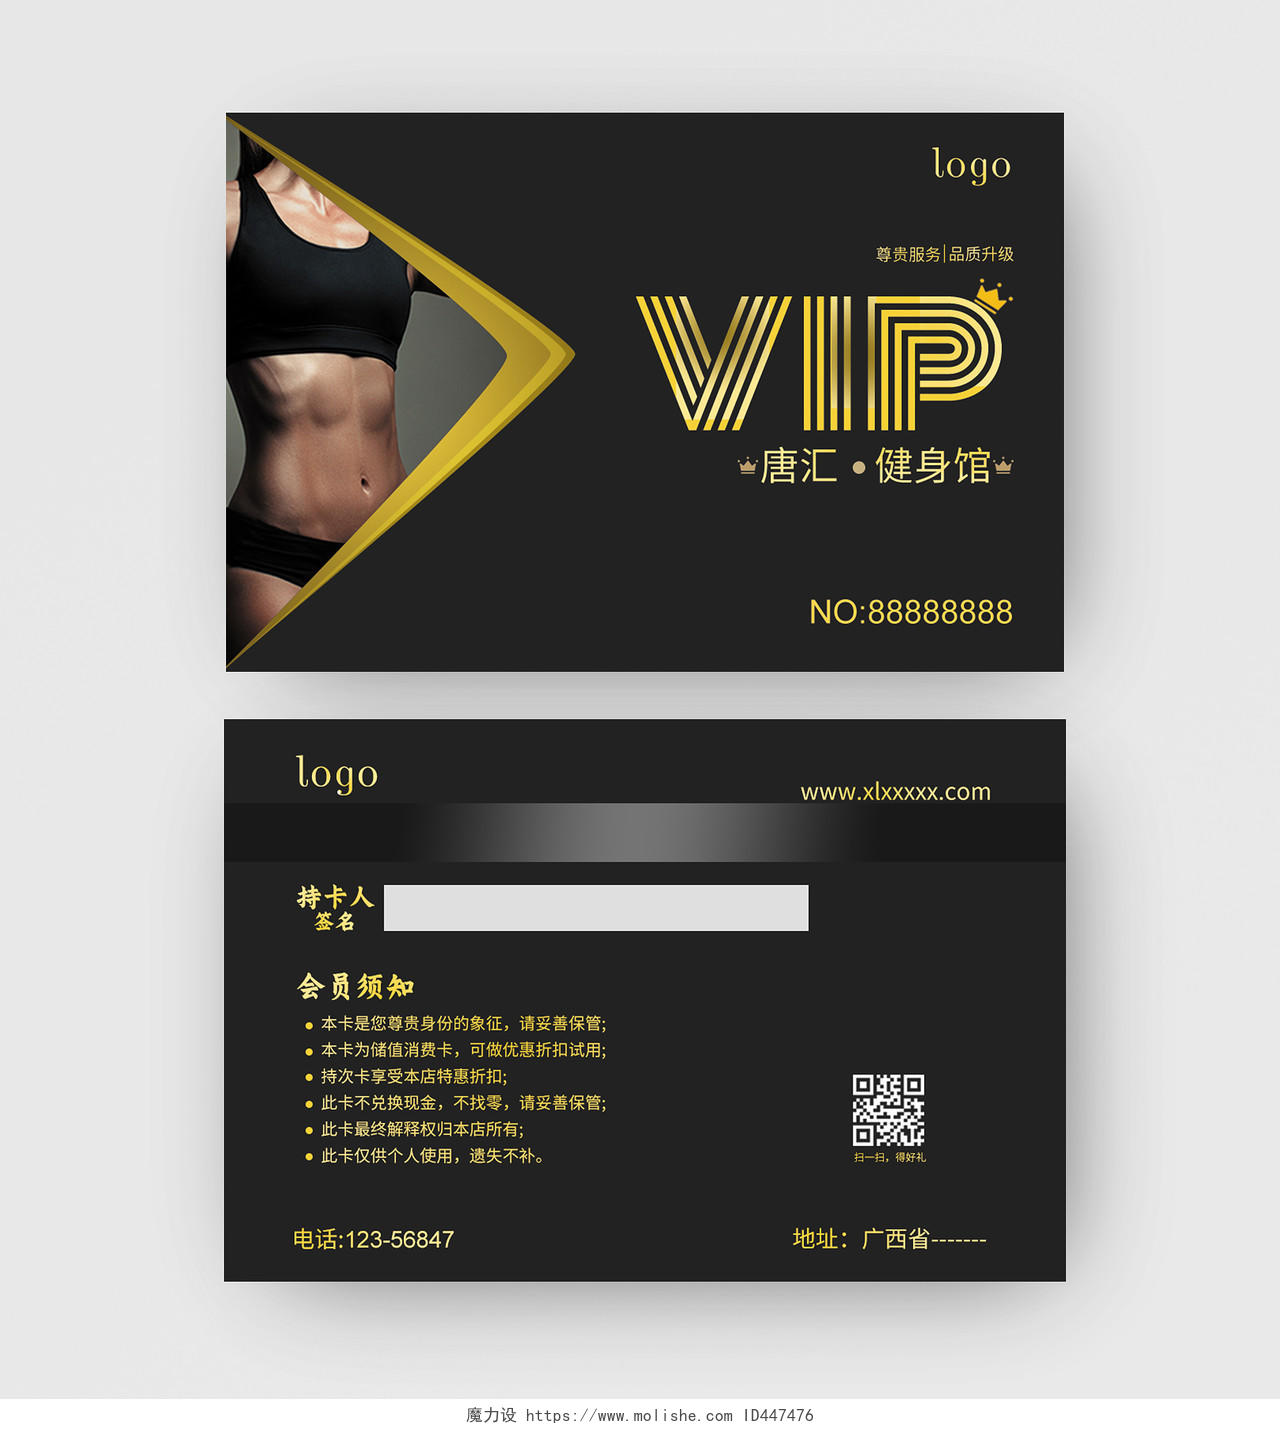 黑色背景黄色为主色调简约风格科技风格VIP健身会卡健身会员卡